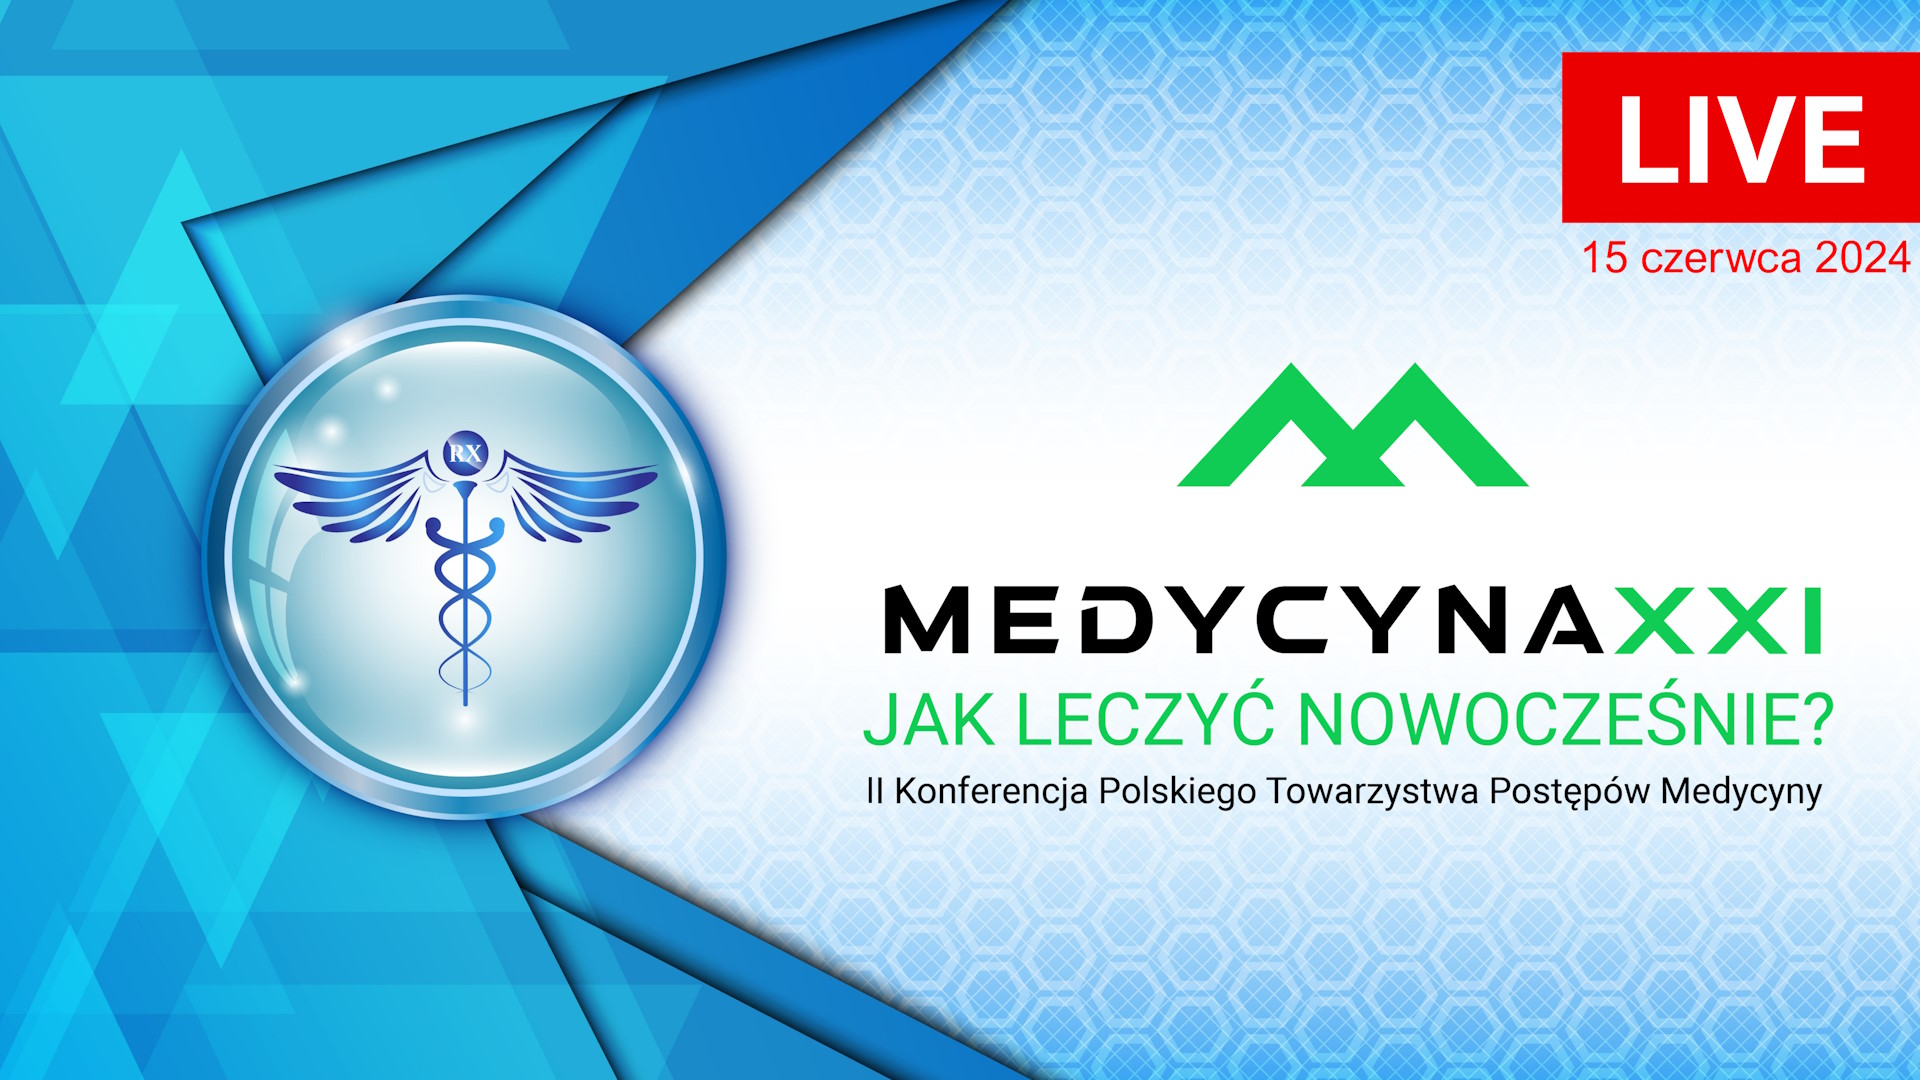 II Konferencja Polskiego Towarzystwa Postępów Medycyny: MEDYCYNA XXI – JAK LECZYĆ NOWOCZEŚNIE?